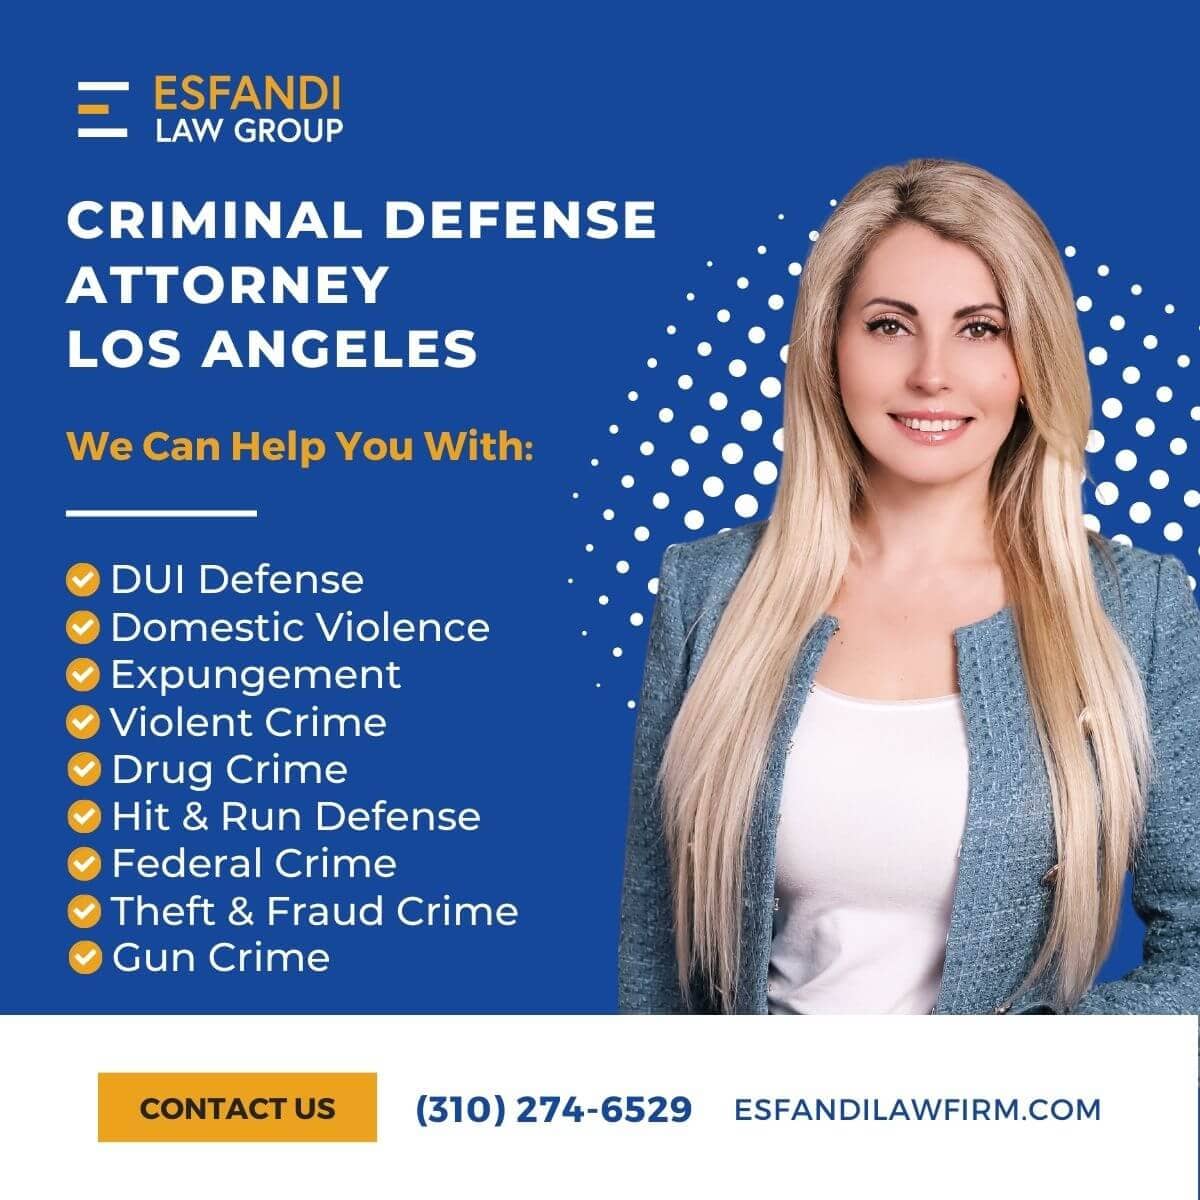 LA Defense Attorney - Call 310-274-6529